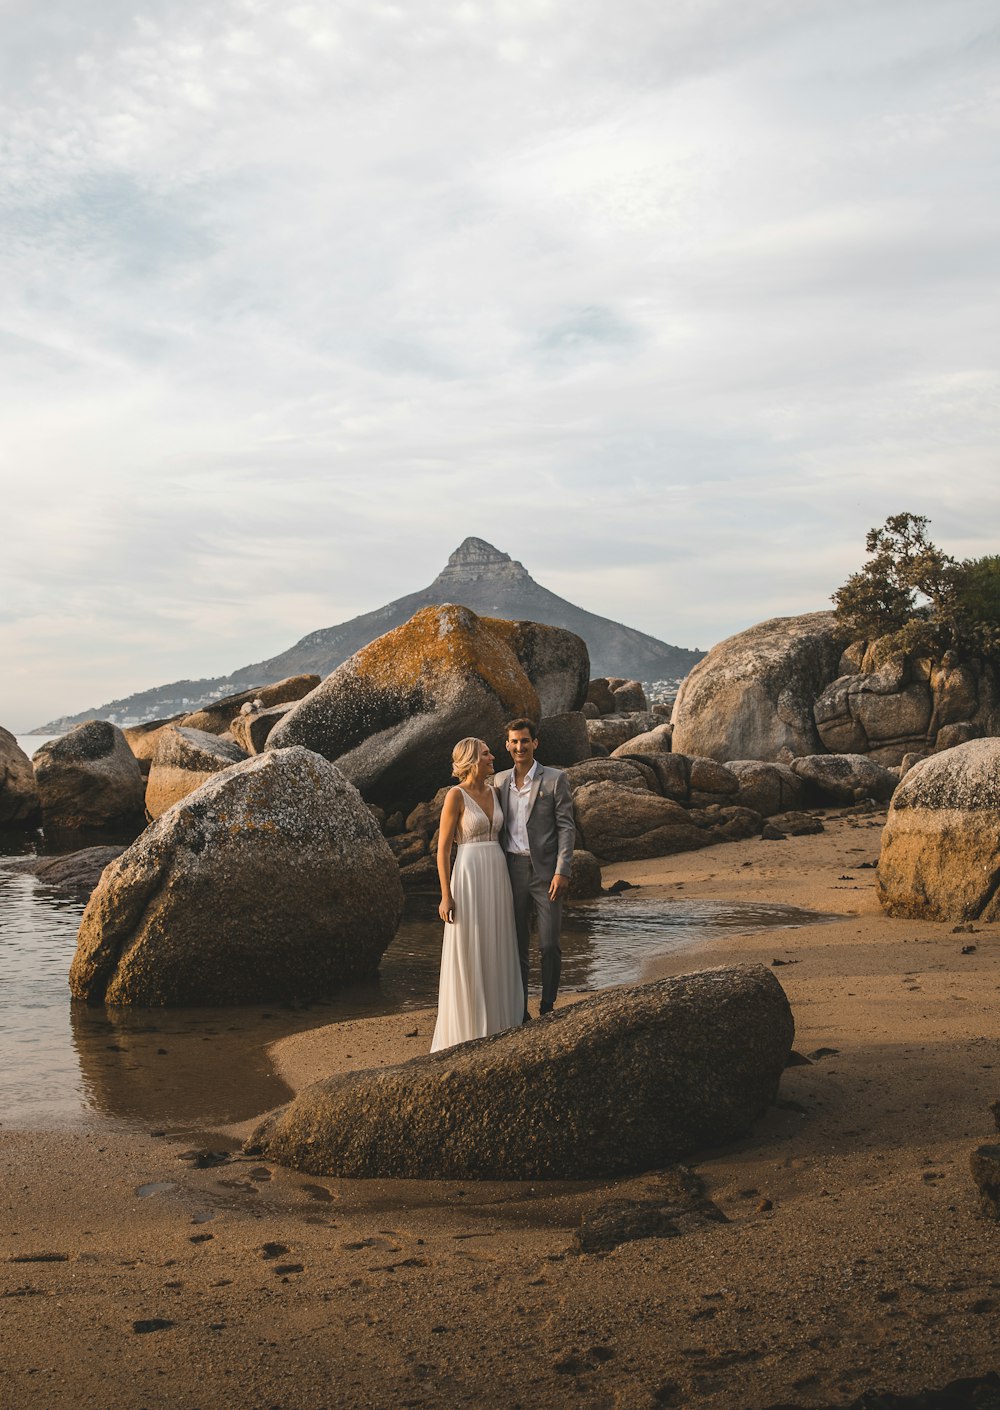 昼間、水辺の茶色の岩の上に立つ白いドレスを着た女性